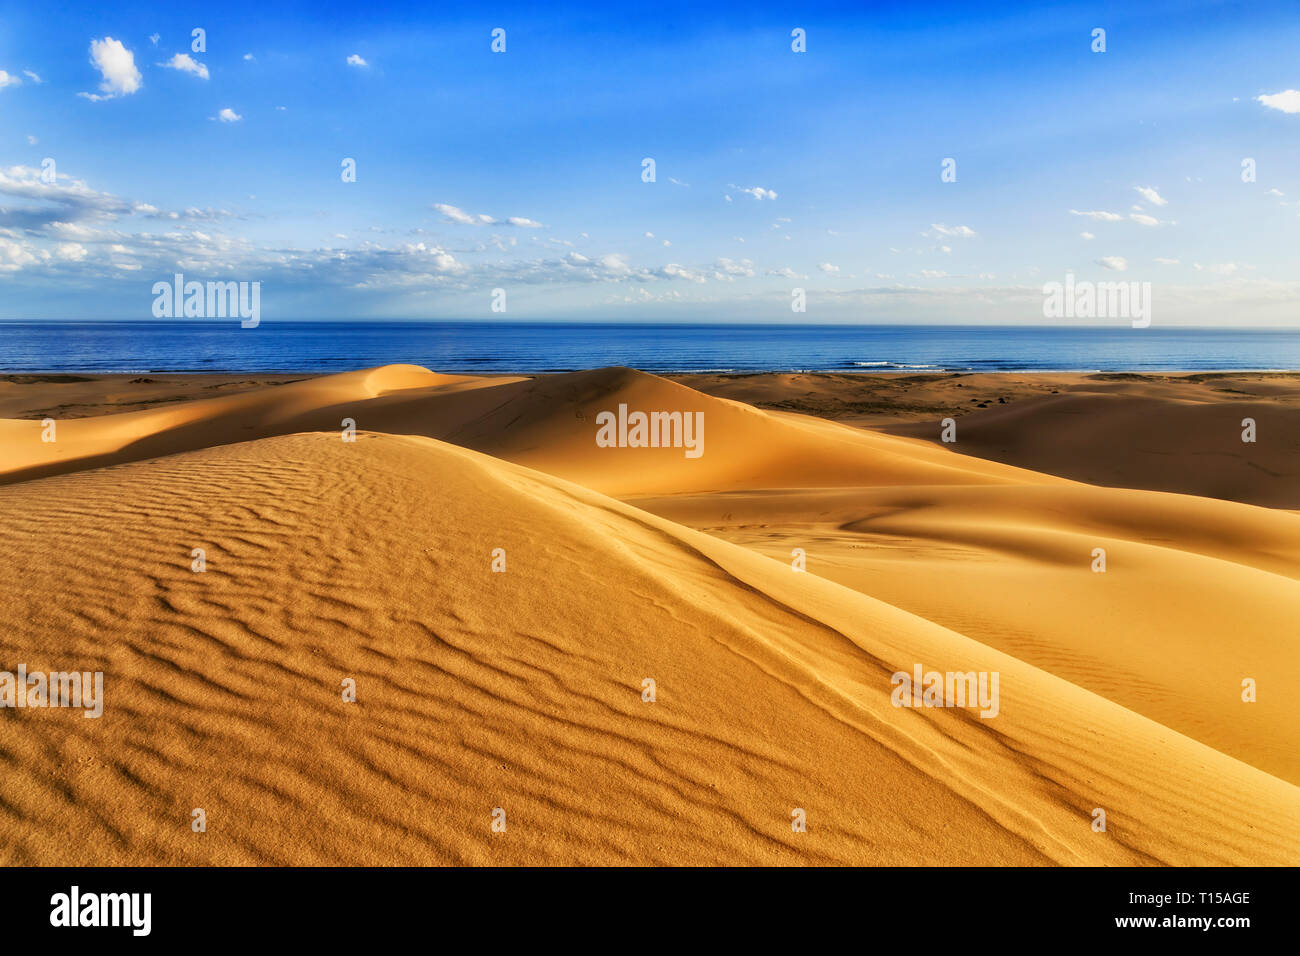 Dunes de sable vierge jaune sous l'érosion éolienne sur Stockton Beach de Pacific Coast en Australie face à mer ouverte sous ciel bleu. Banque D'Images